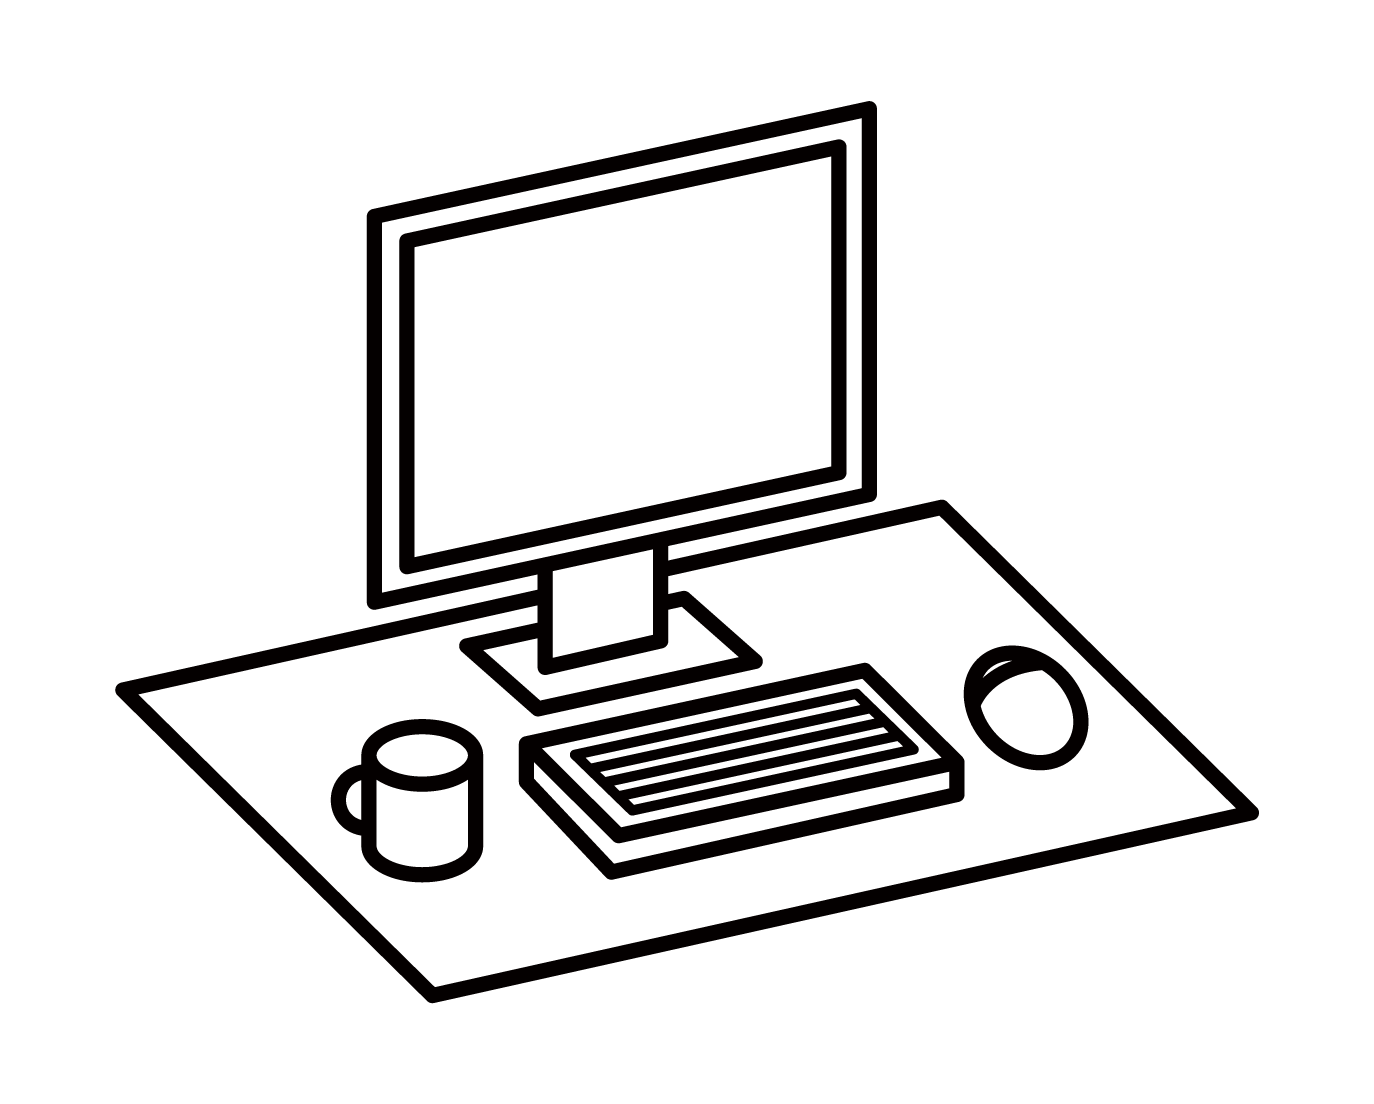 Illustration of computer desk and work desk